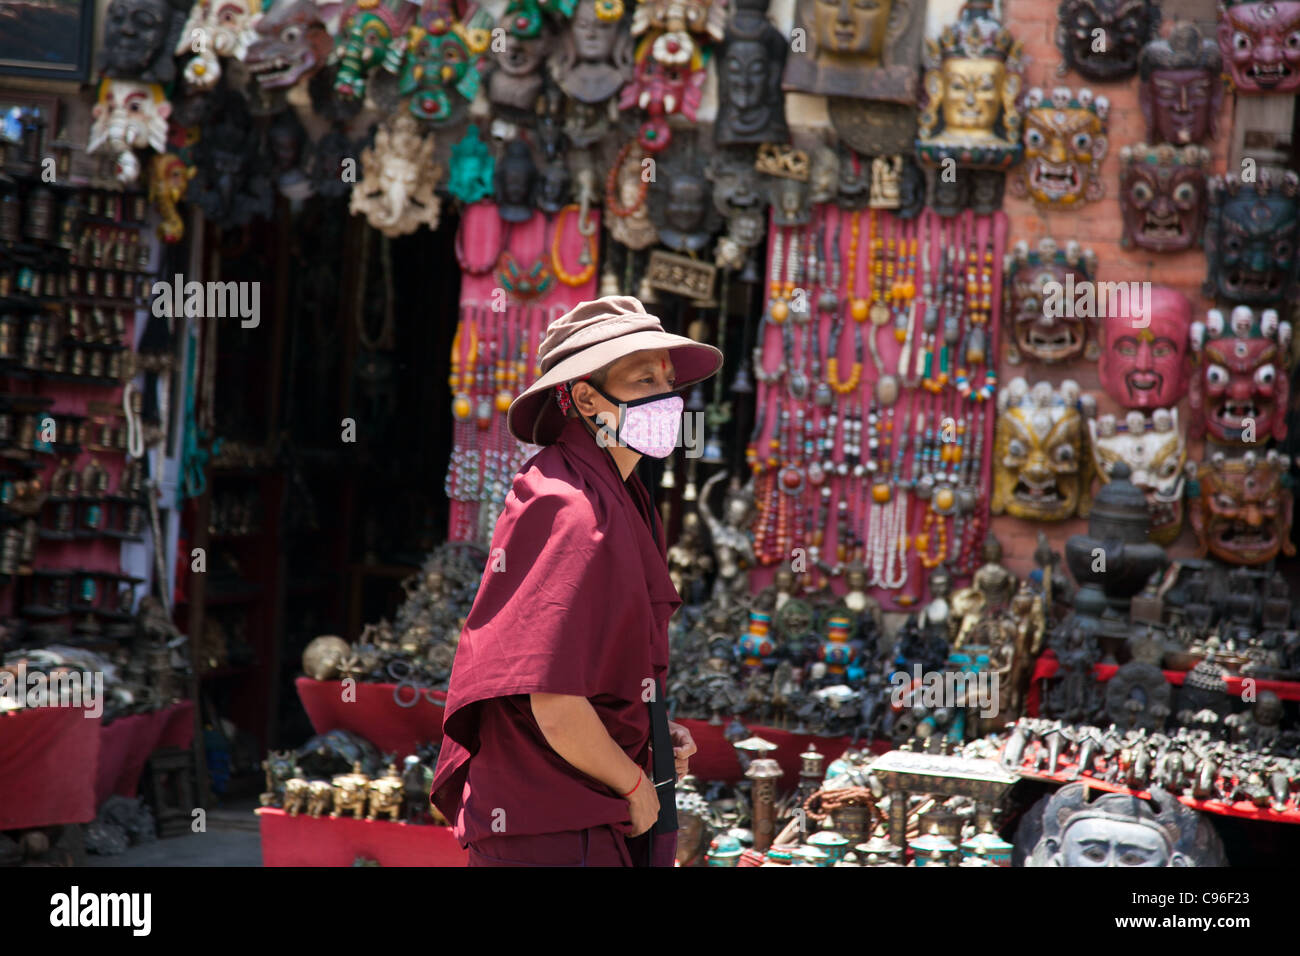 Un monaco buddista presso il Tempio delle Scimmie. Negozio di souvenir per comprare sono sul display. Foto Stock